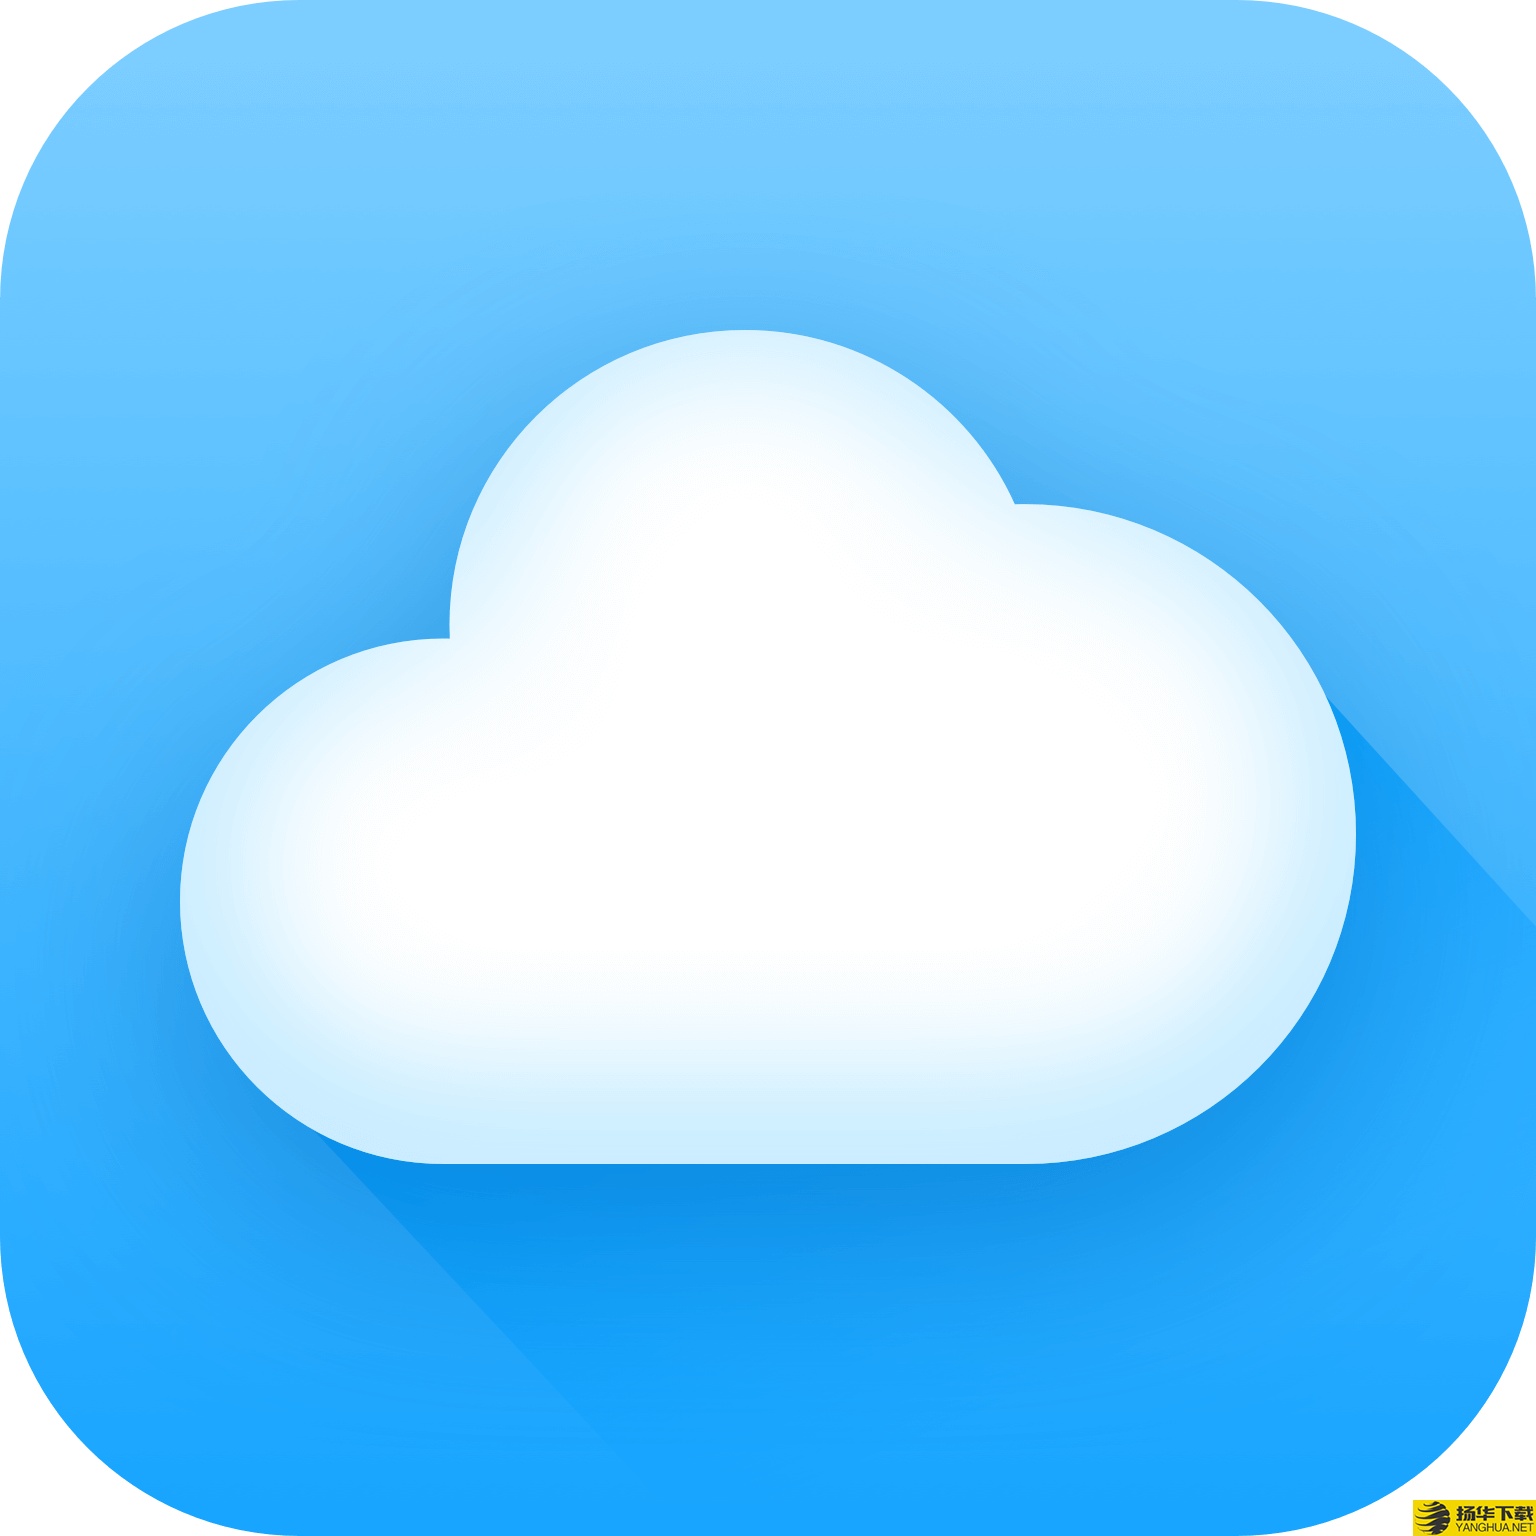 城市天气大师app下载_城市天气大师app最新版免费下载